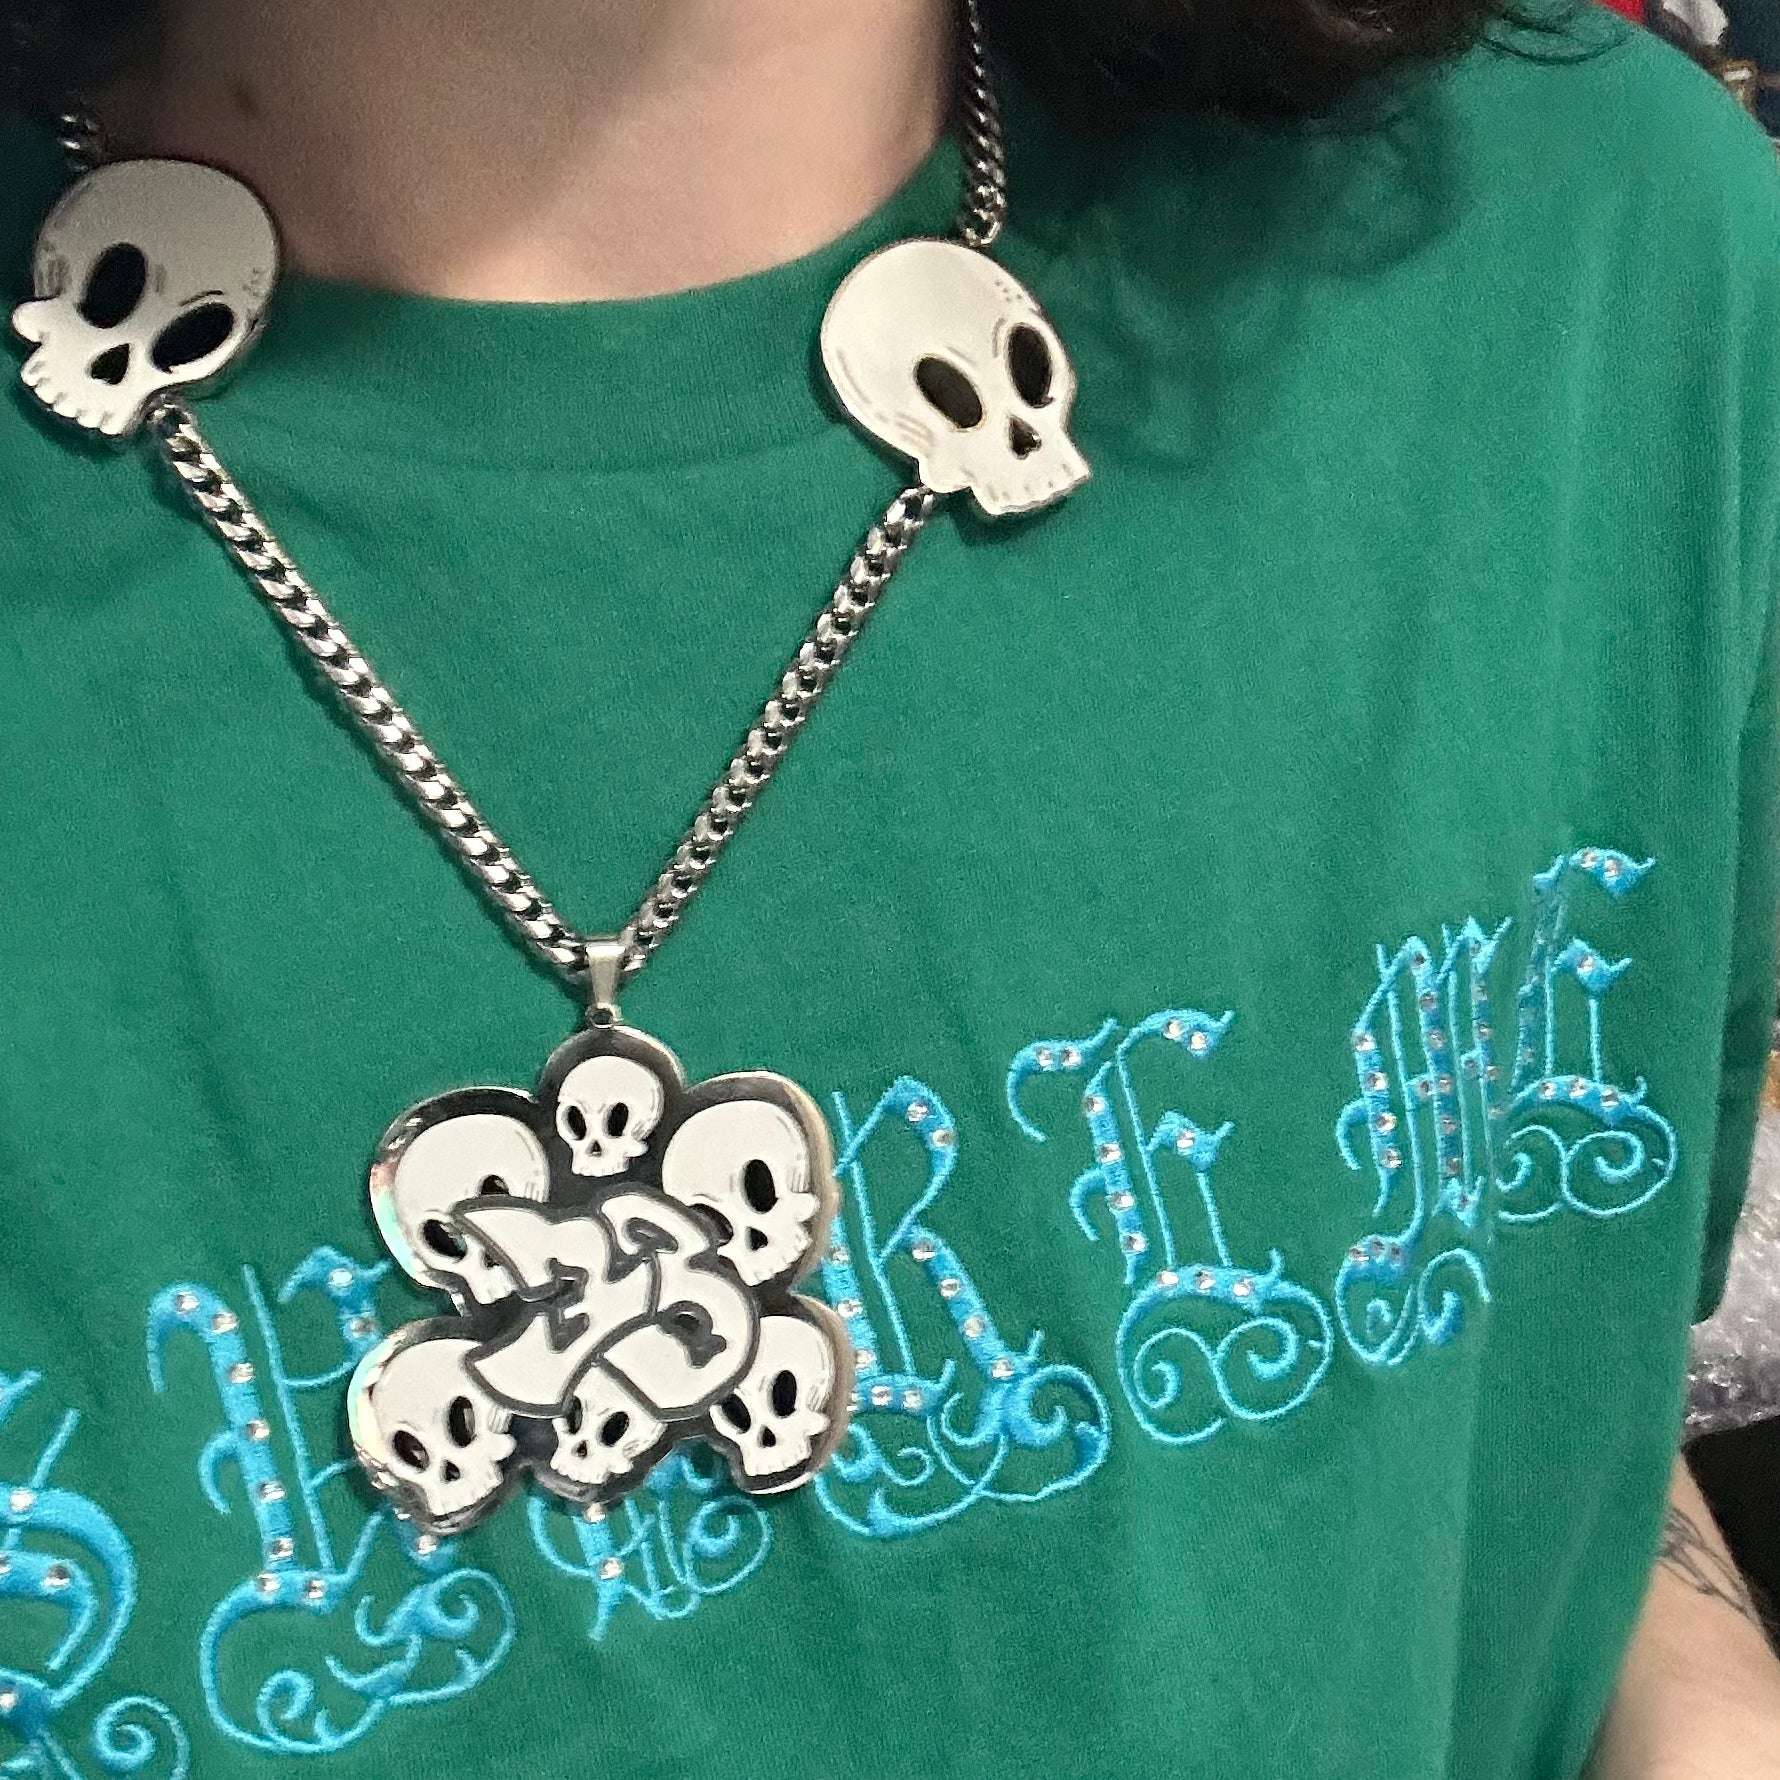 Skulls chain